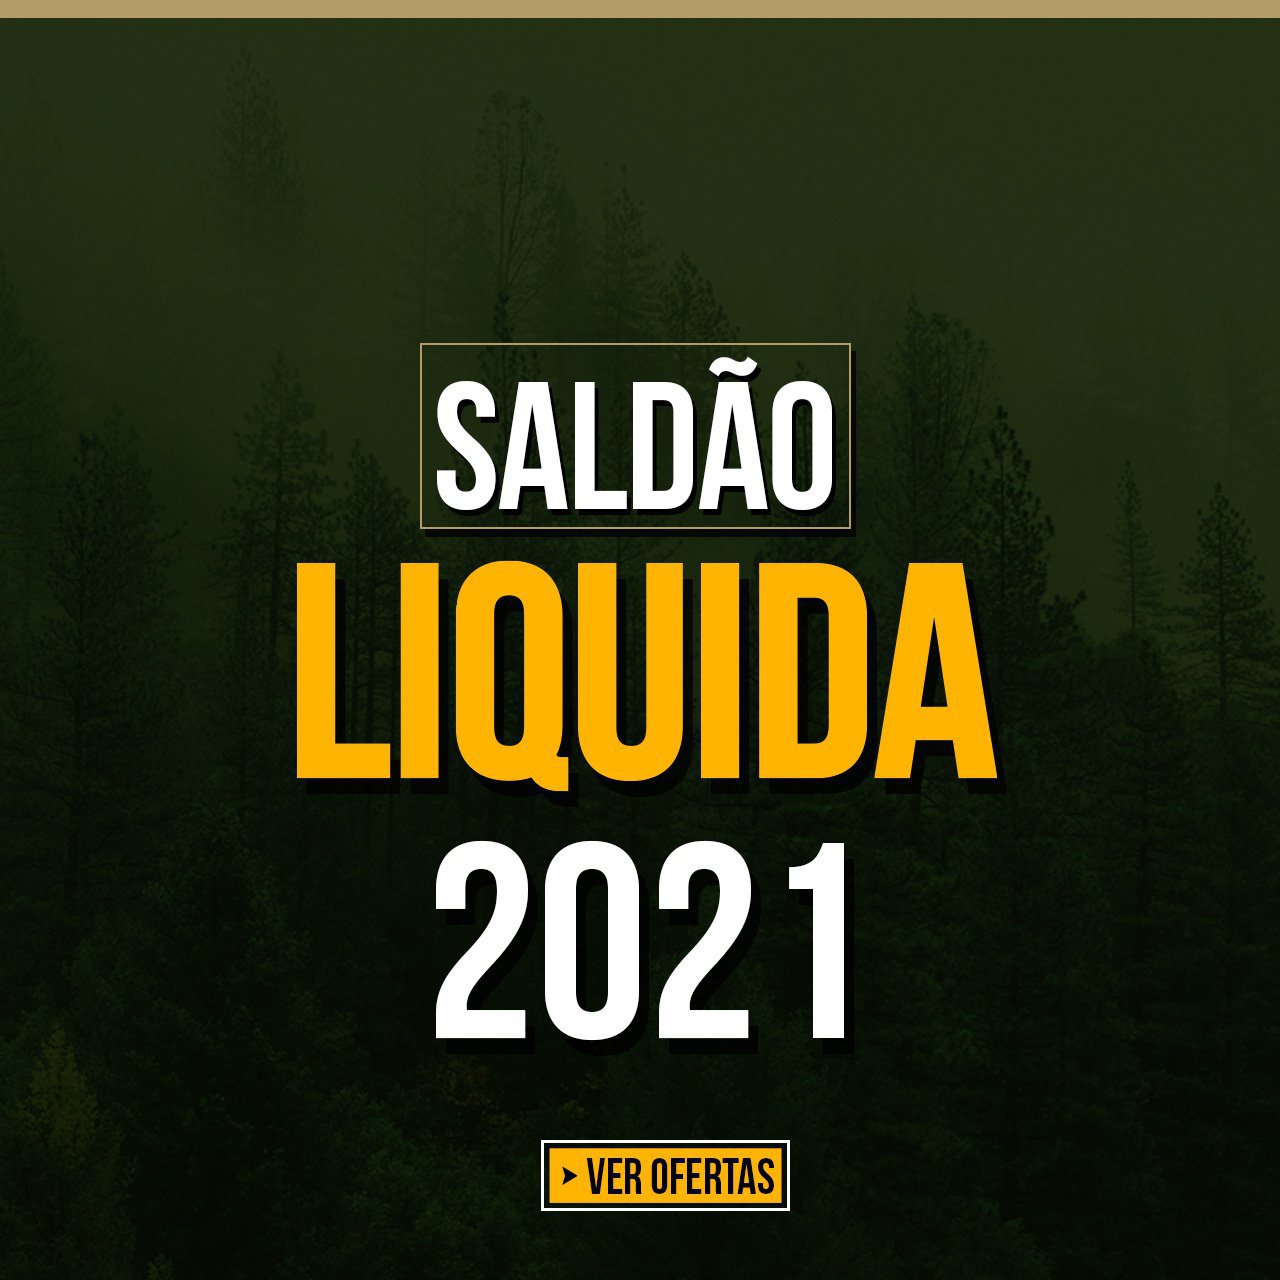 Liquida 2021 - Saldão